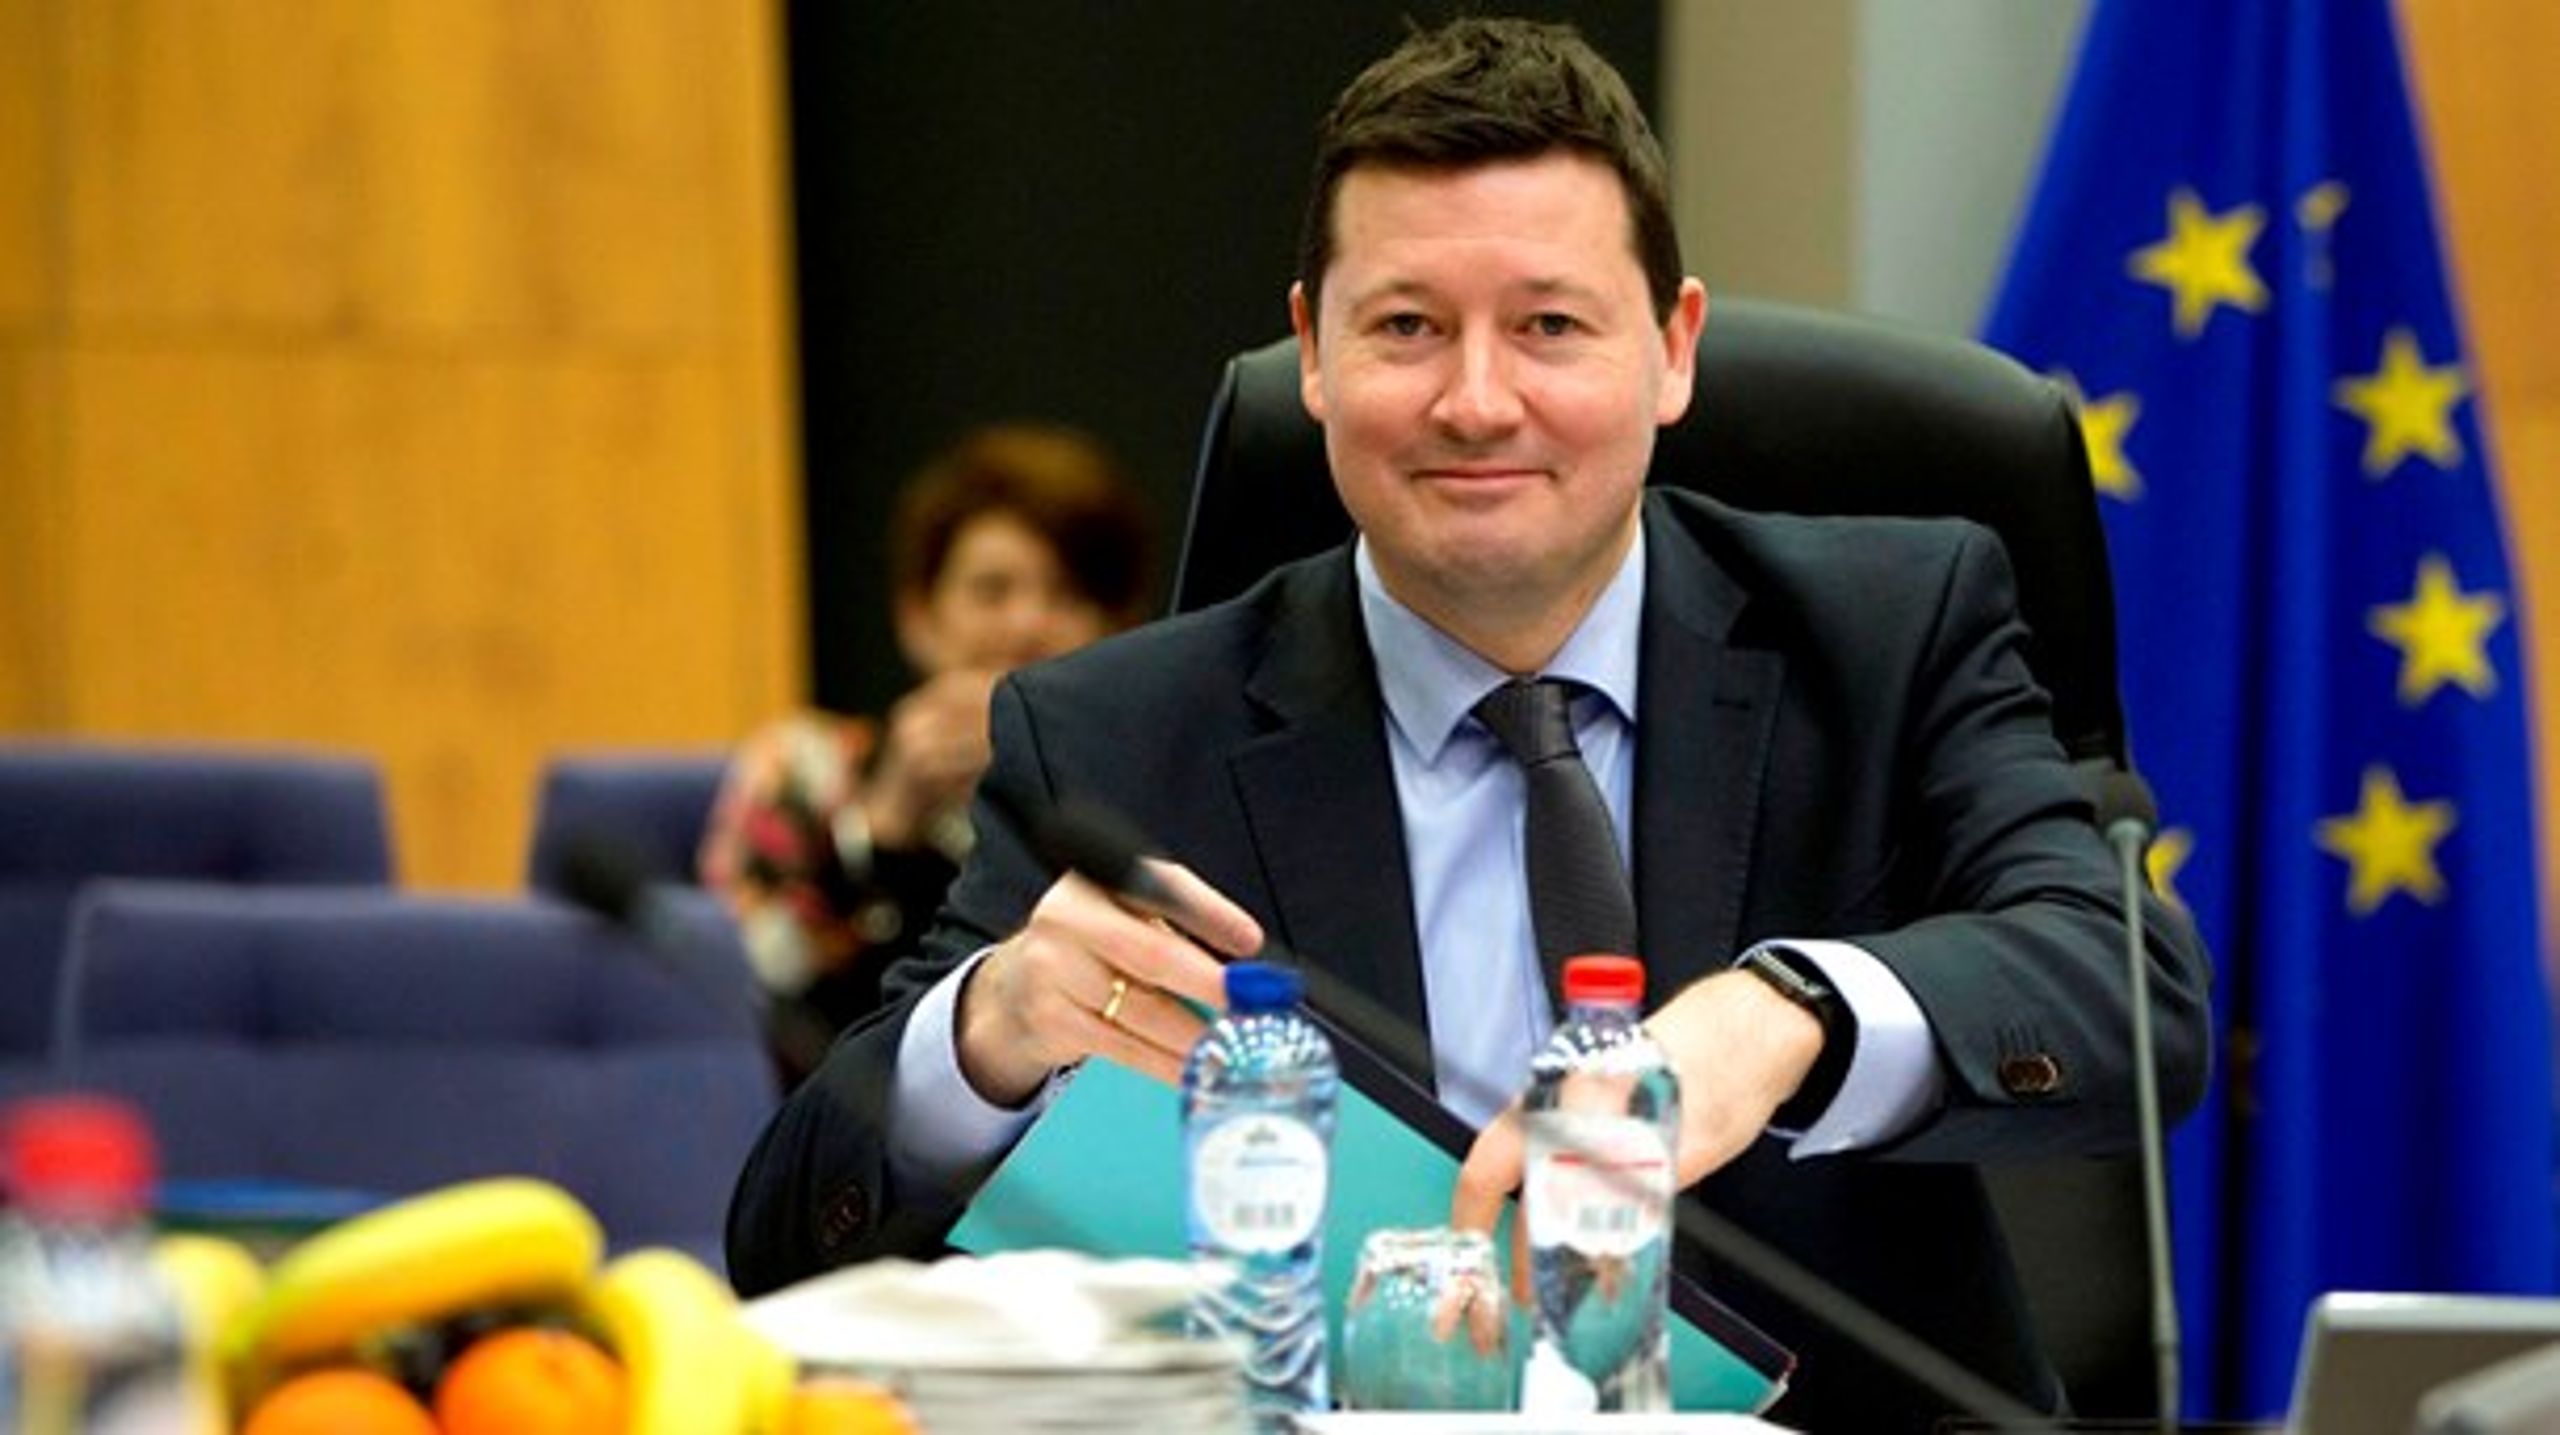 Martin Selmayr er tidligere kabinetchef for den nuværende formand for EU-Kommissionen, Jean-Claude Juncker.